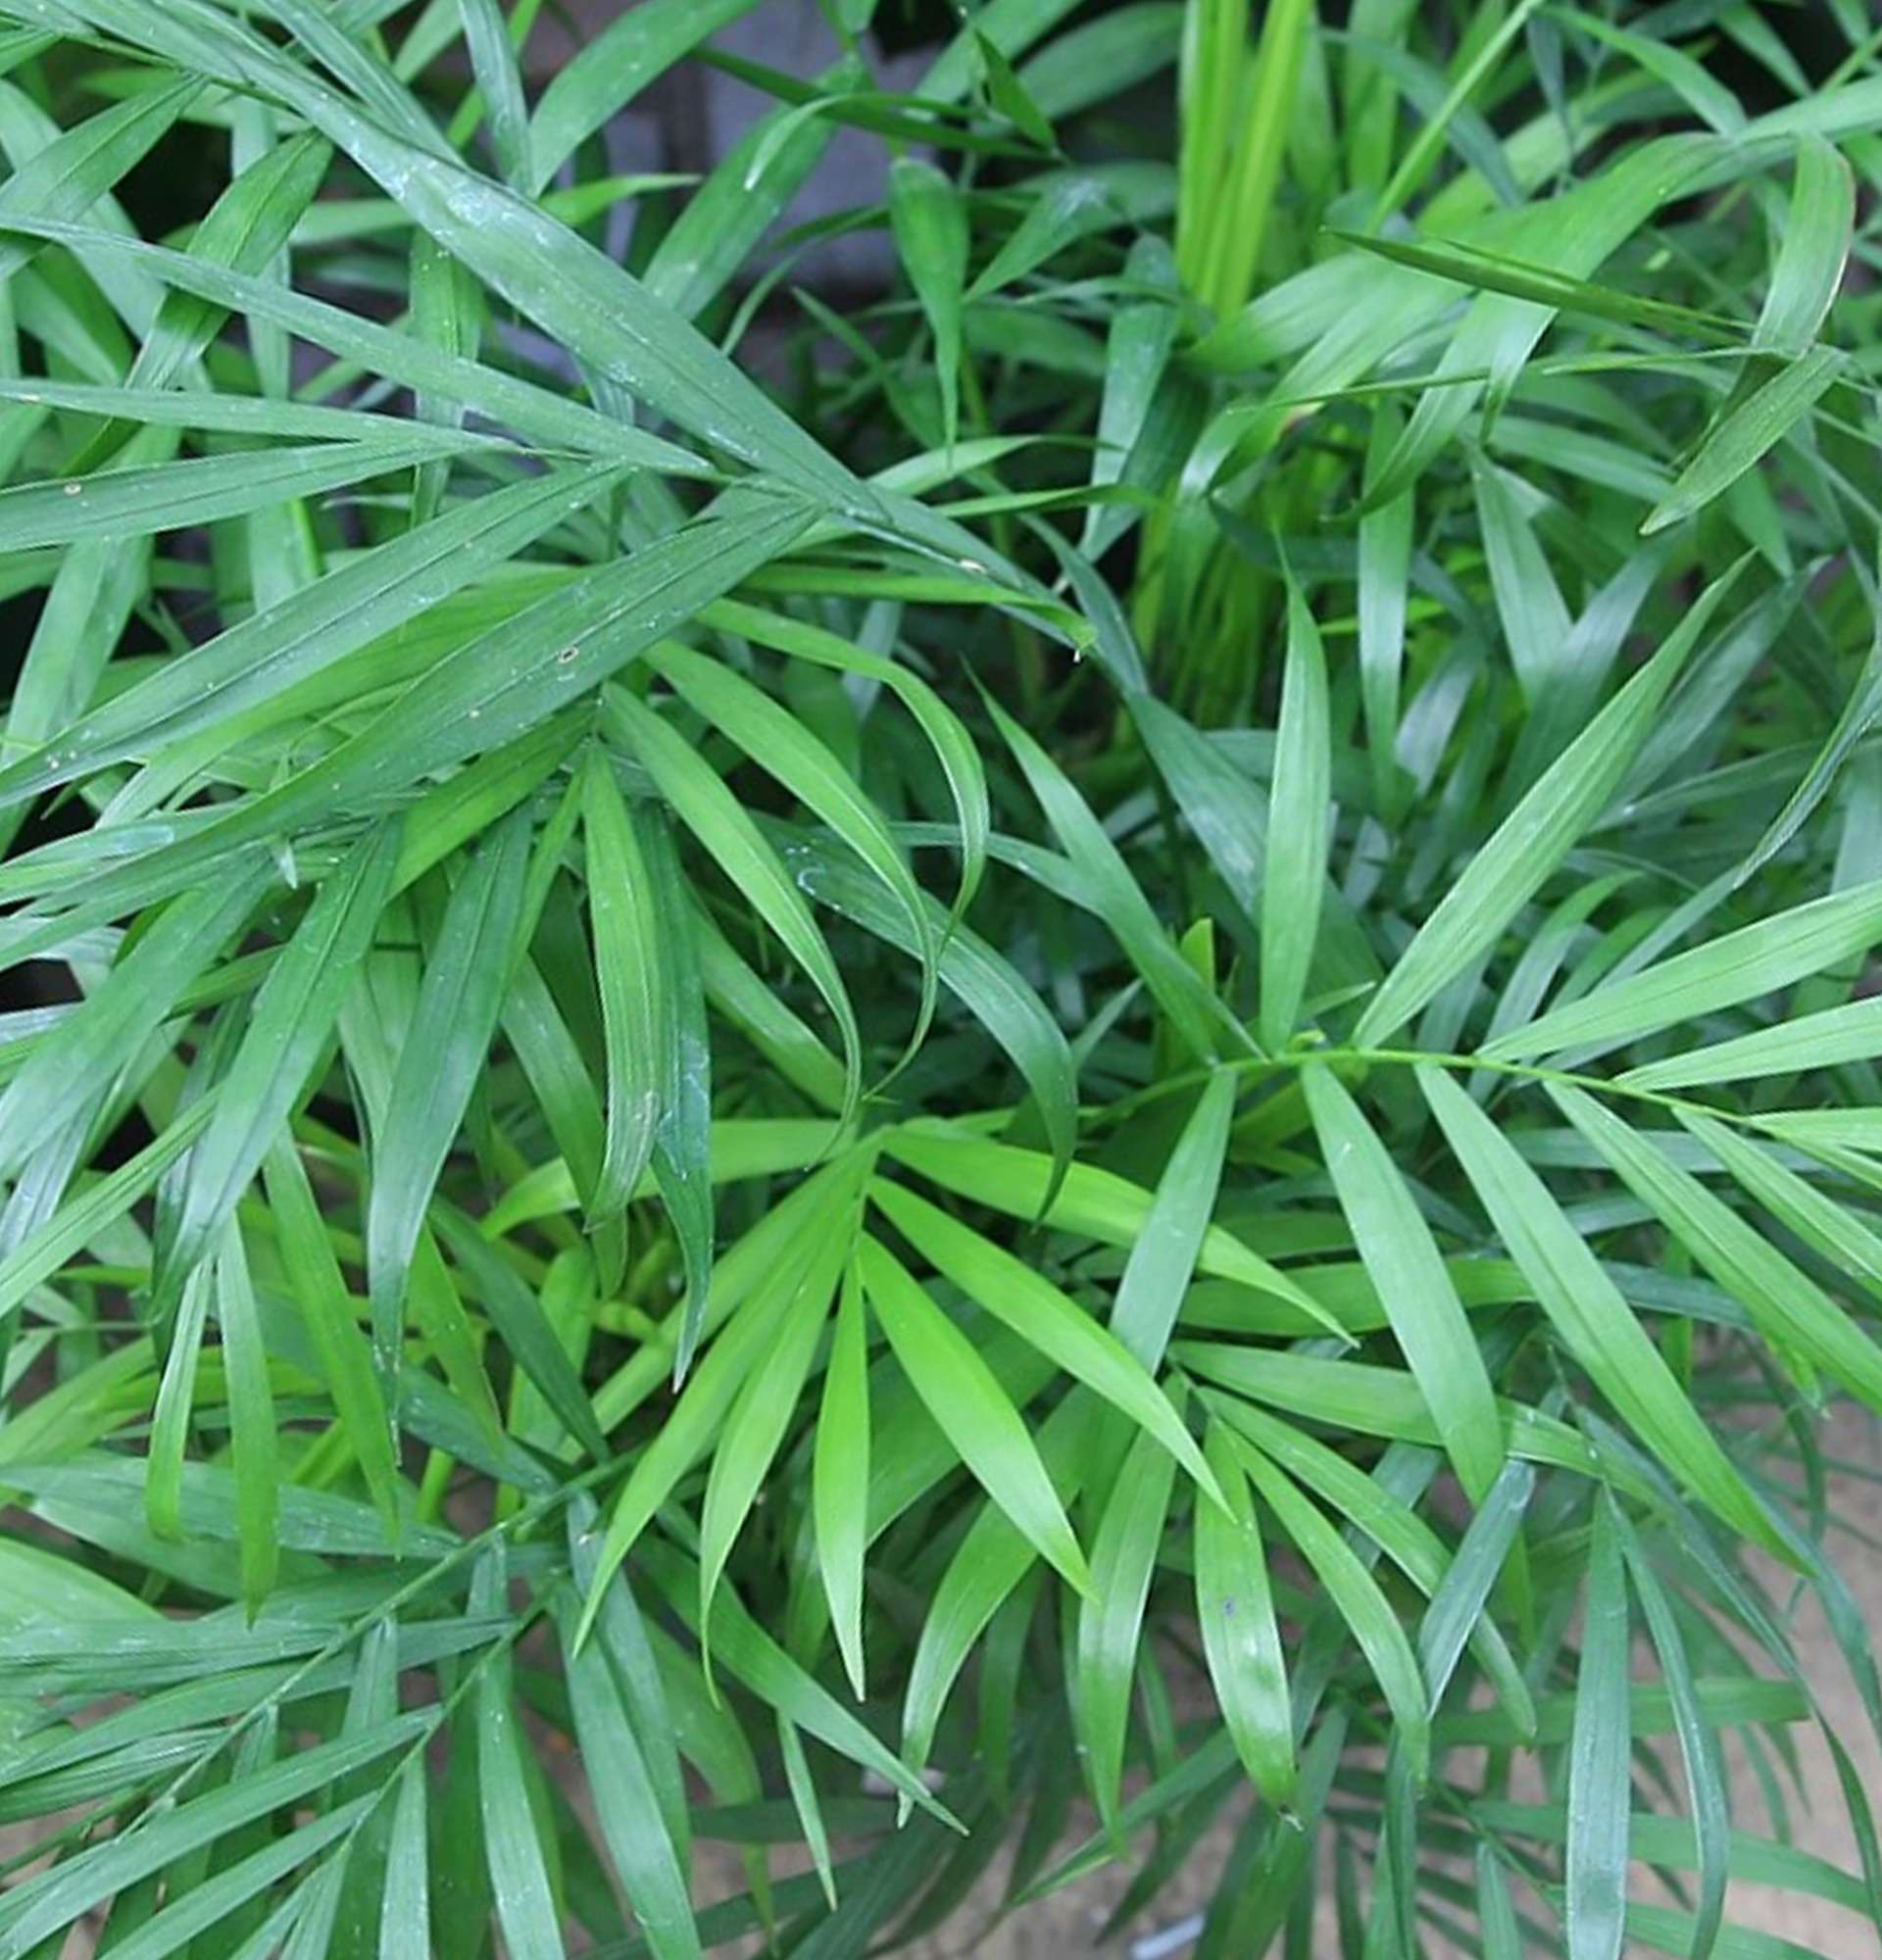  листья бамбуковой пальмы фото - неанта